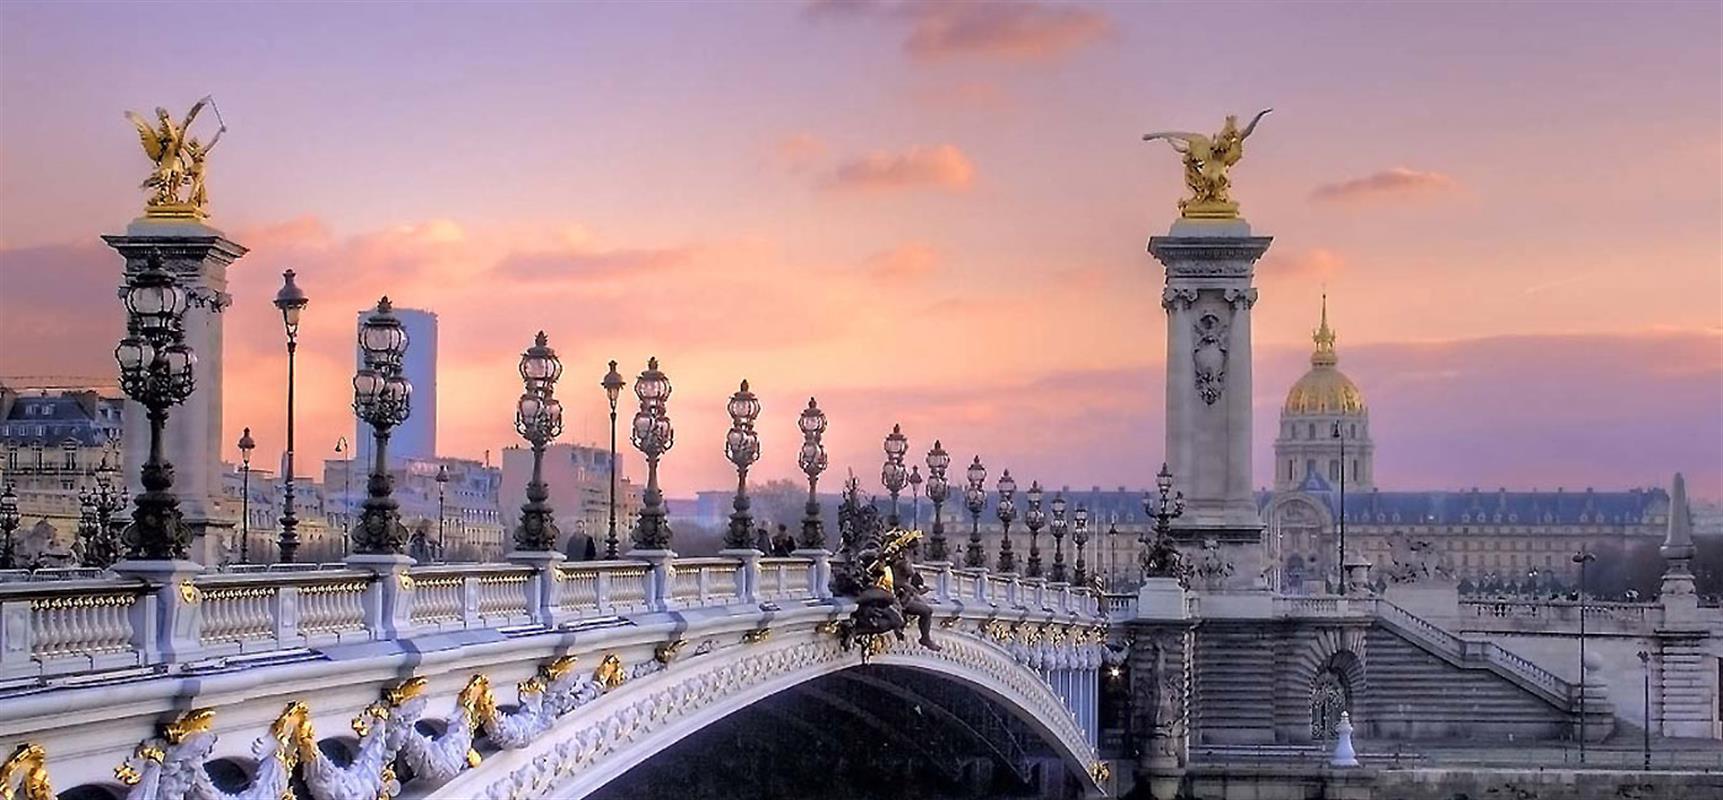 Arched bridge with art nouveau lamps along the Seine River in Paris, France